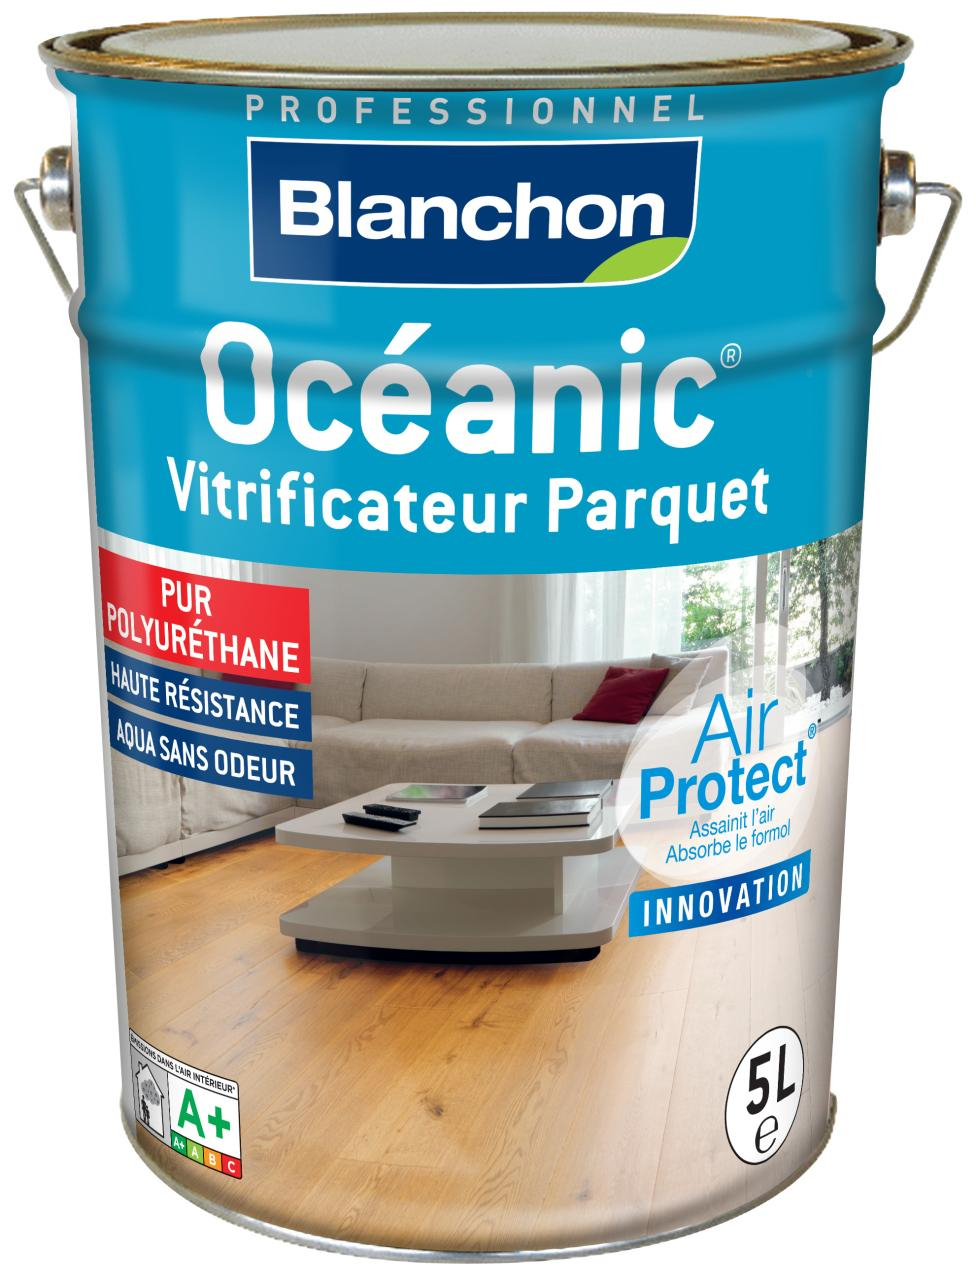 vitrificateur-parquet-oceanic-5l-chene-cire-blanchon-0